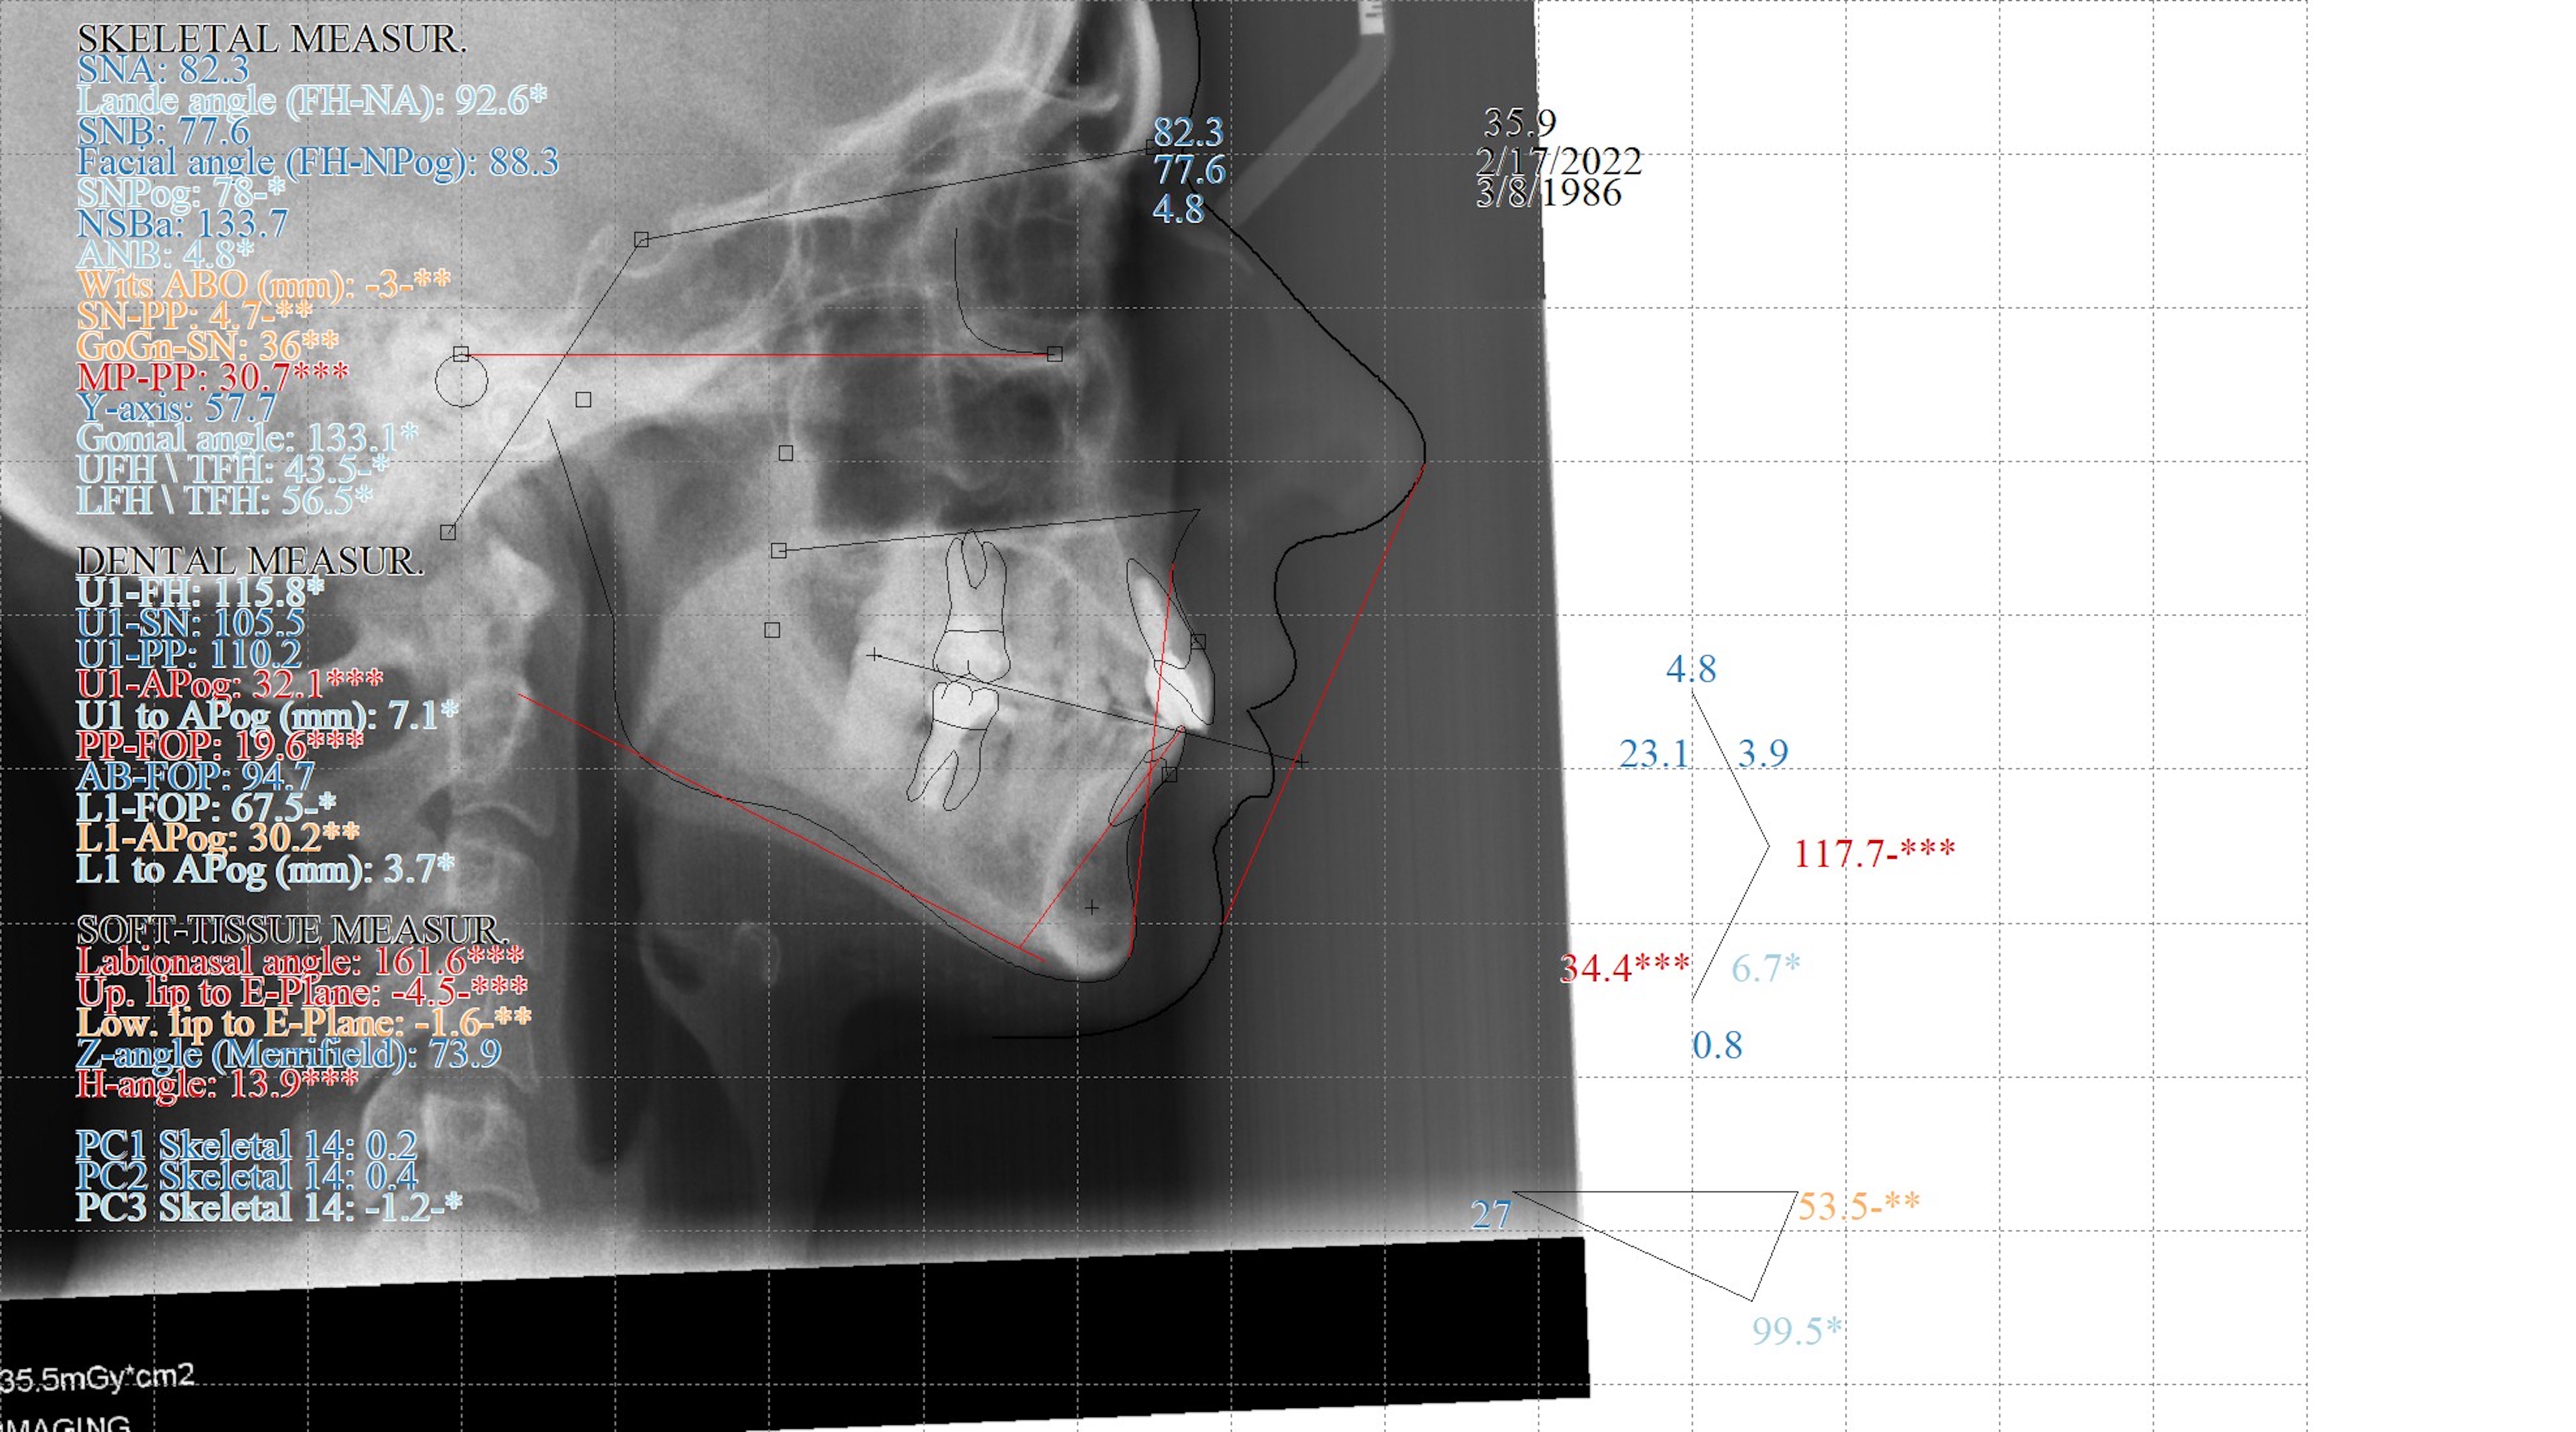 Fig. 16: Final cephalometric radiograph and analysis.